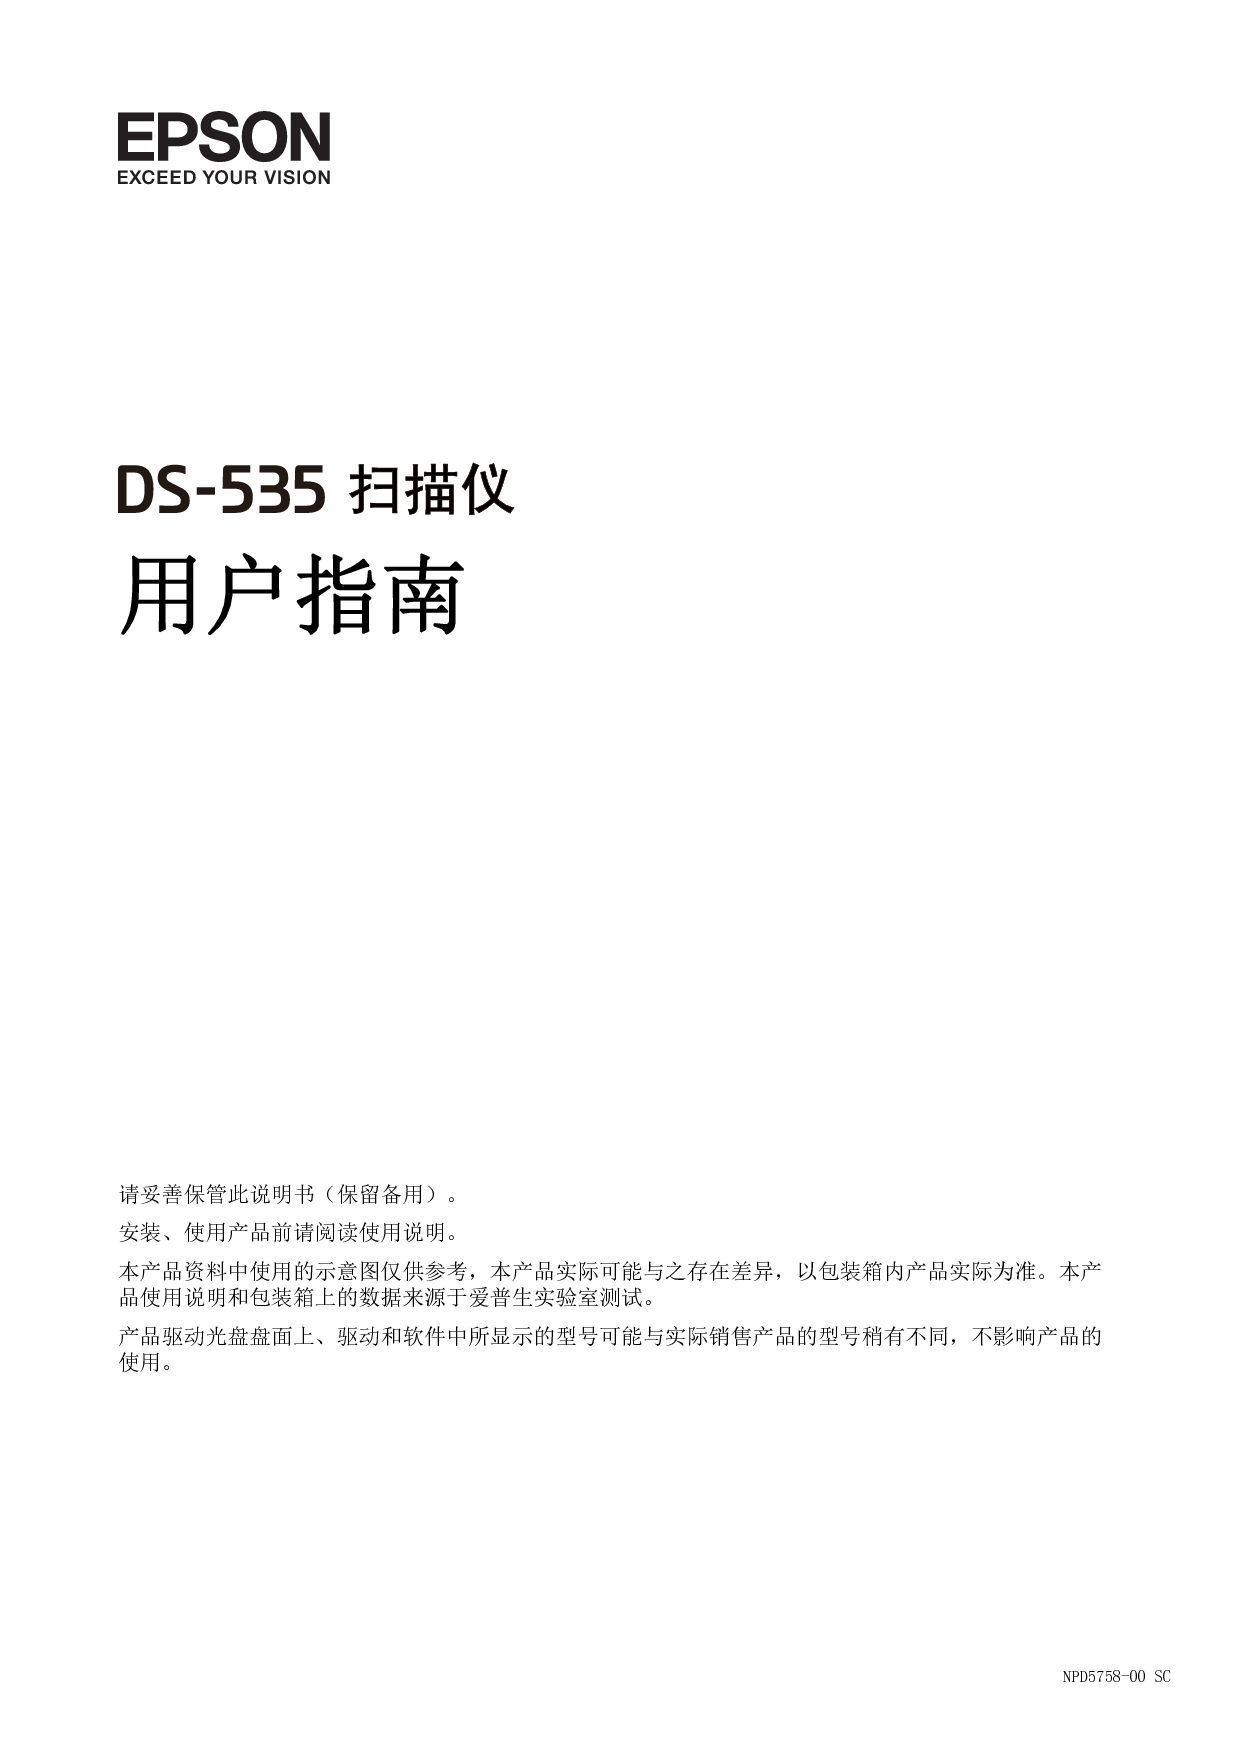 爱普生 Epson DS-535 用户指南 封面